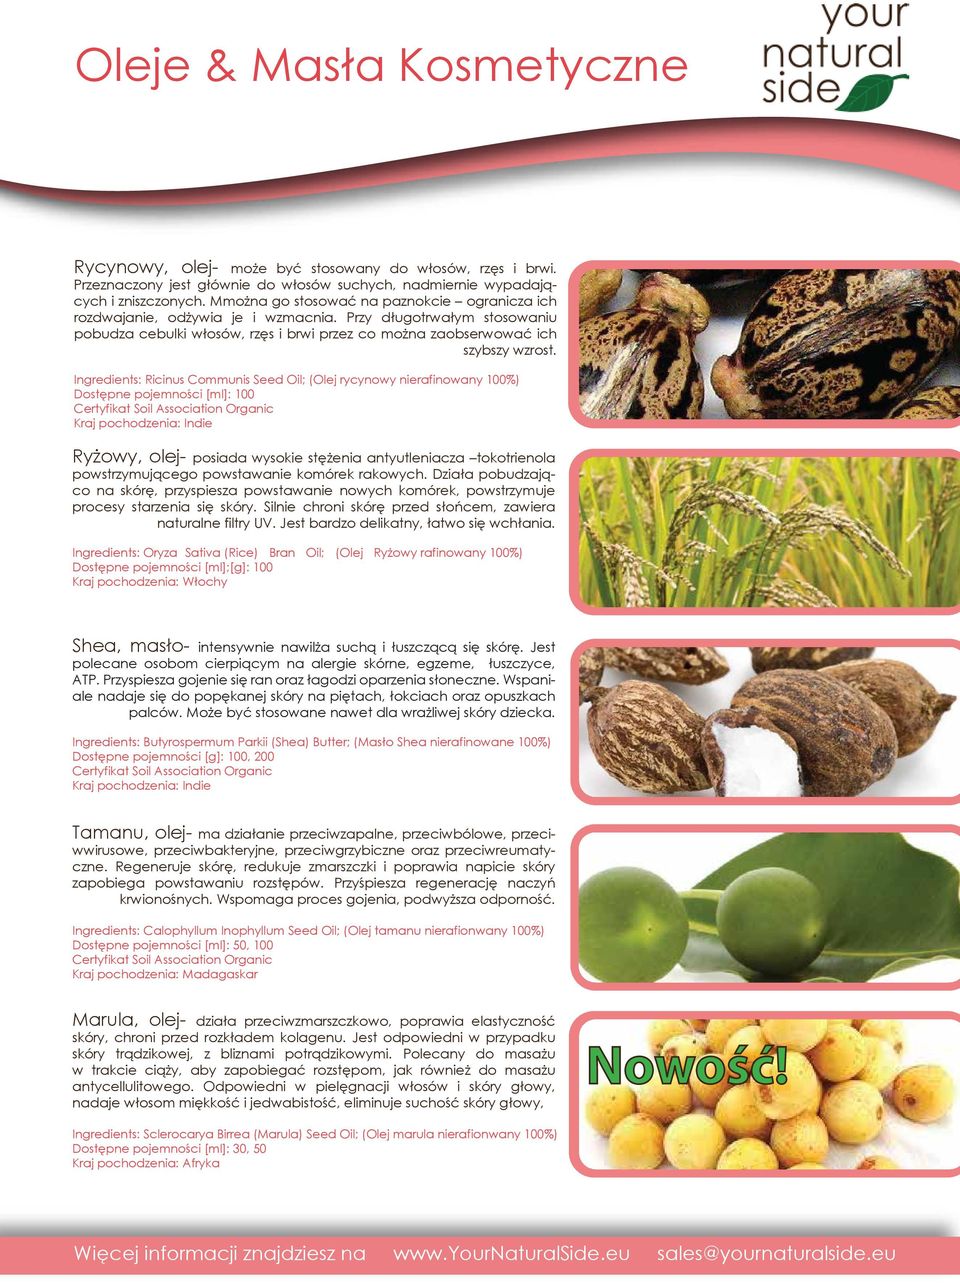 Ingredients: Ricinus Communis Seed Oil; (Olej rycynowy nierafinowany 100%) Dostępne pojemności [ml]: 100 Kraj pochodzenia: Indie Ryżowy, olej- posiada wysokie stężenia antyutleniacza tokotrienola